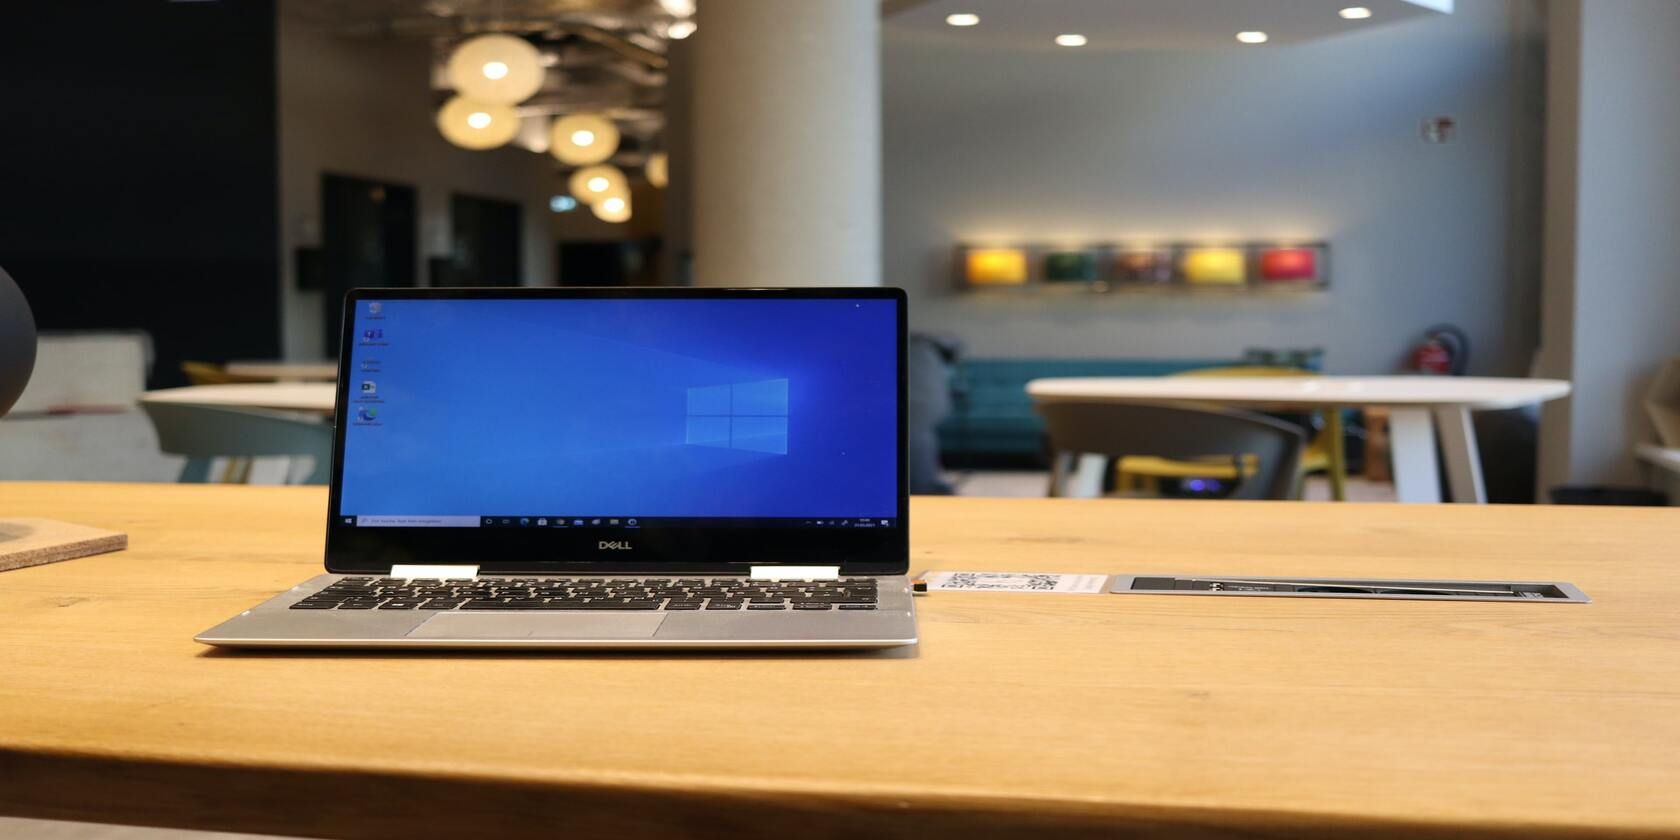 Dell Windows 10 desktop